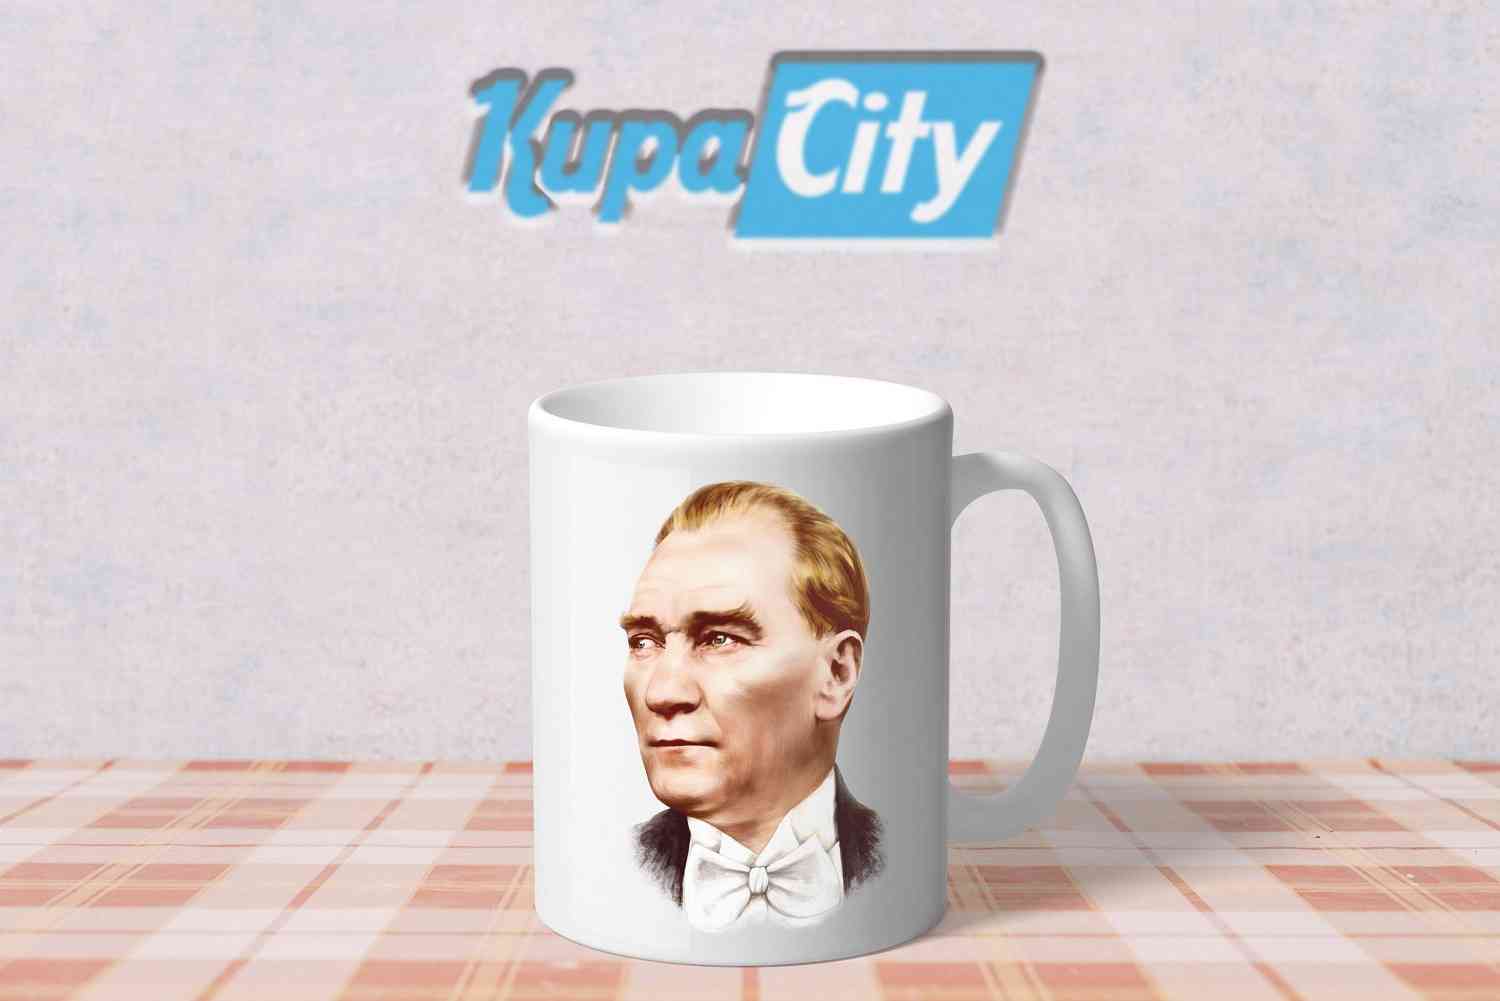 Atatürk Baskılı Kupa Bardak